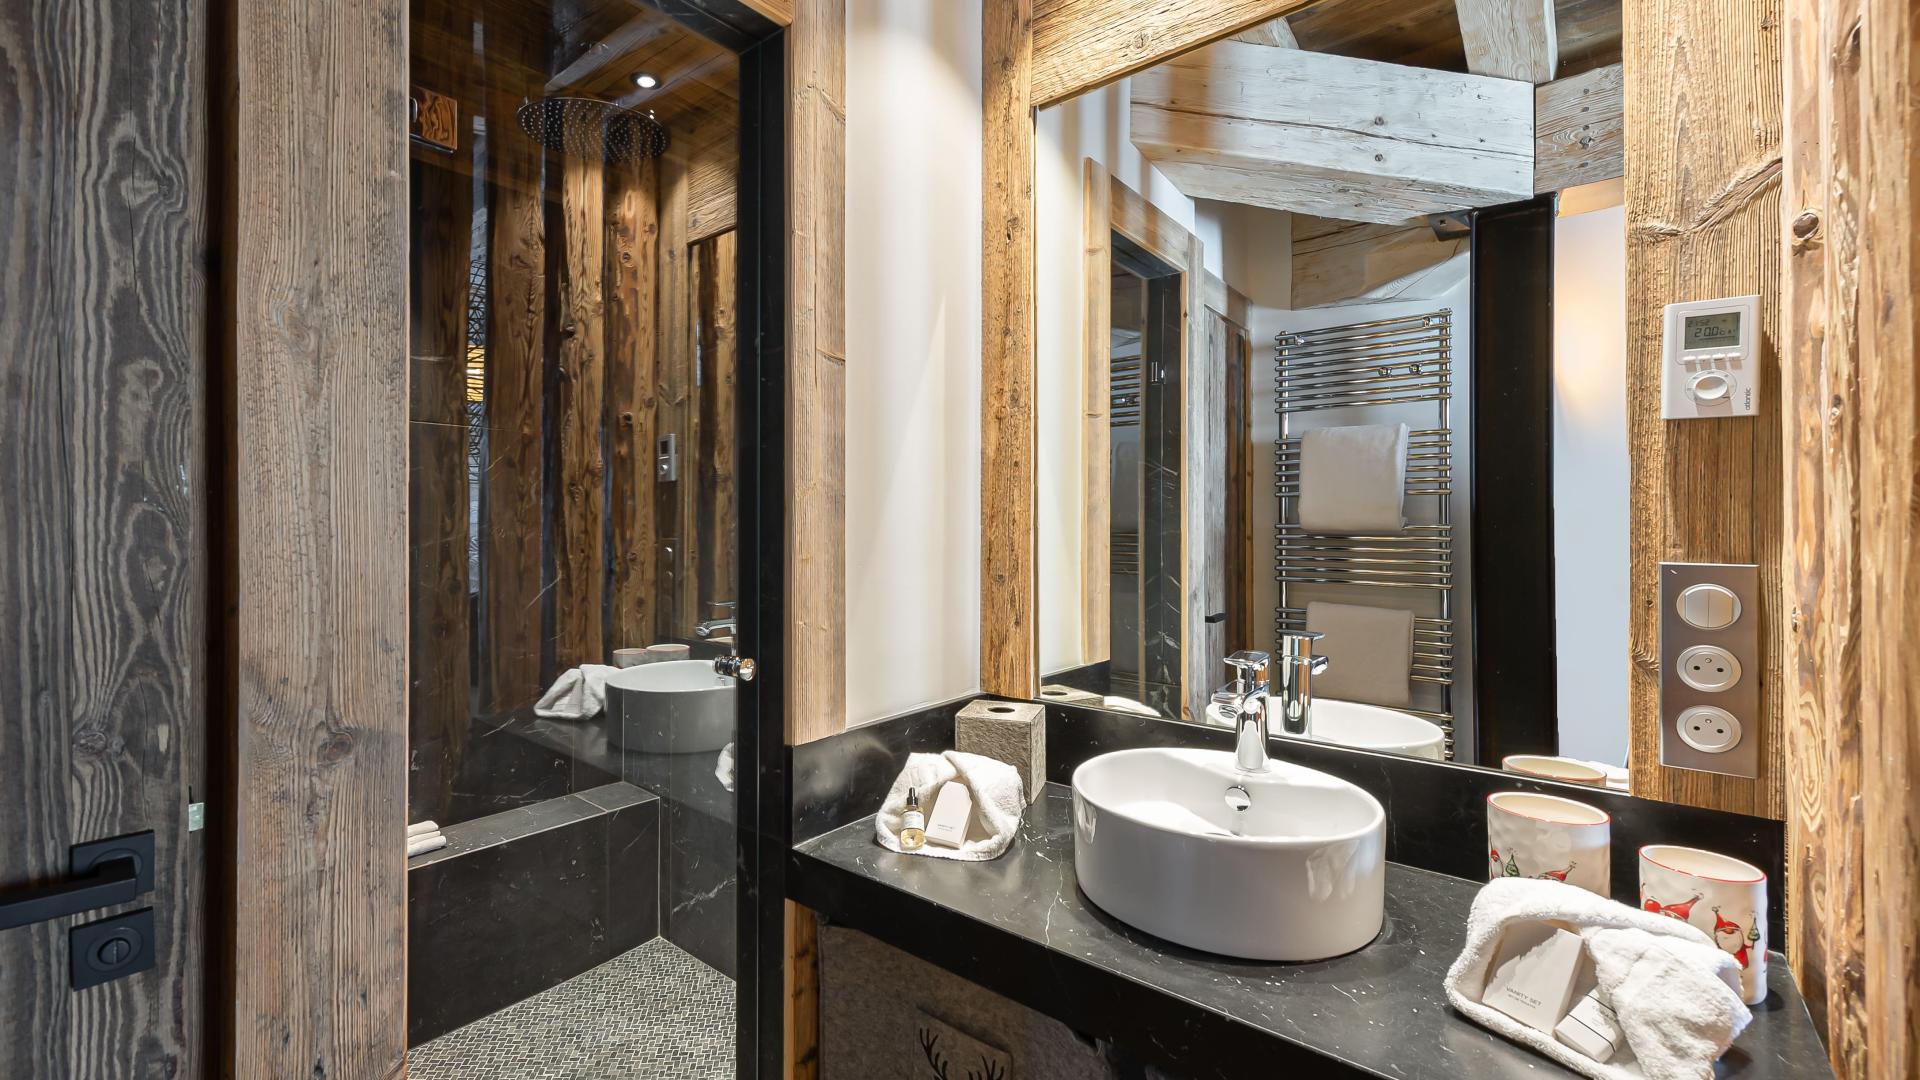 Appartement Penthouse Flèche 4 - Location chalets Covarel - Val d'Isère Alpes - France - Salle de bain chambre master